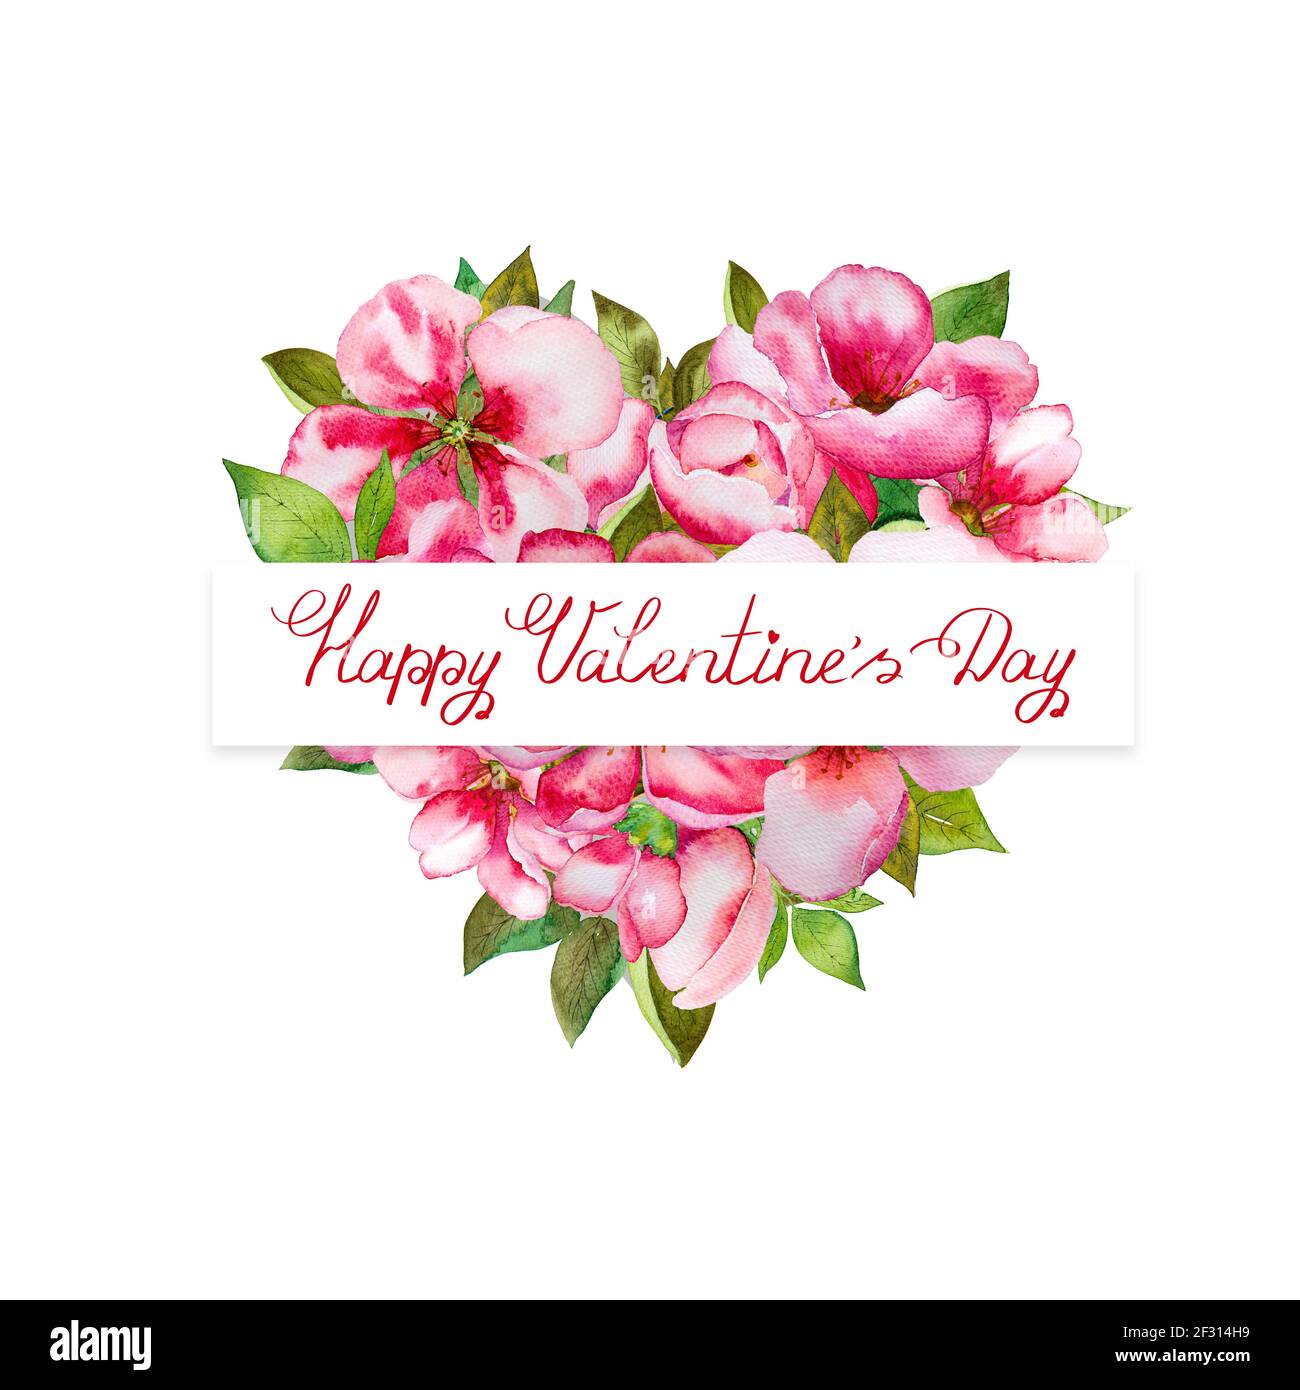 Cuore colorato di San Valentino con fiori rosa e foglie verdi Foto Stock